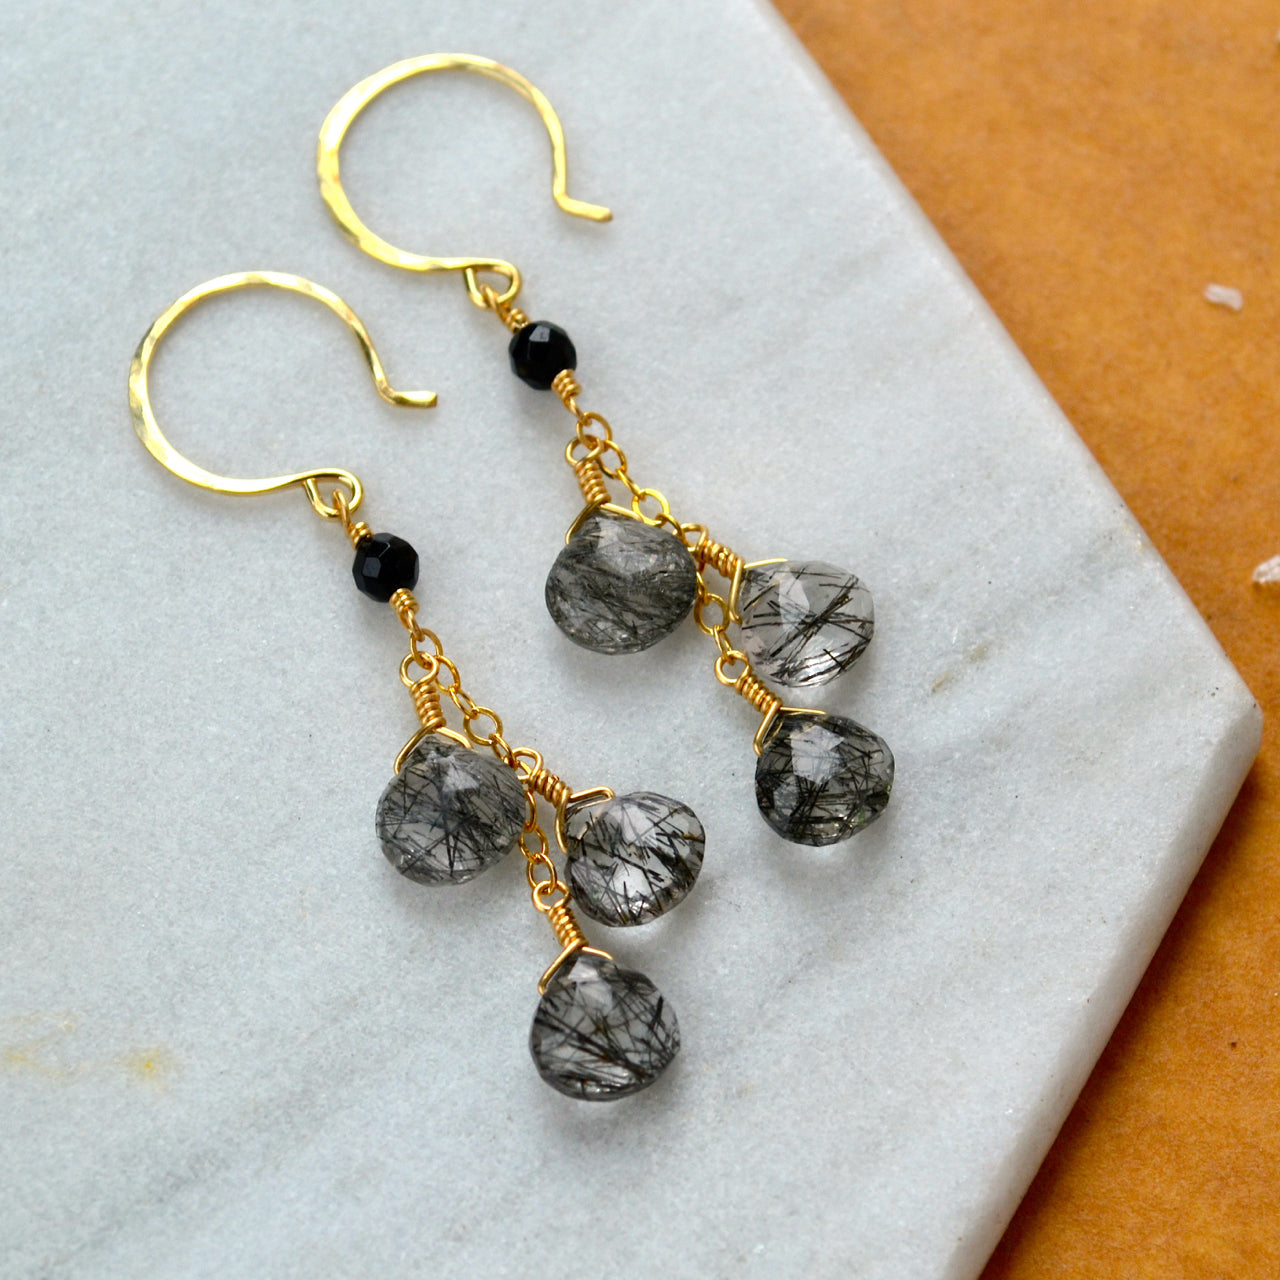 black sands earrings tourmalinated quartz gemstone earring dangles rutilated quartz long earrings handmade black and white ear ring gold